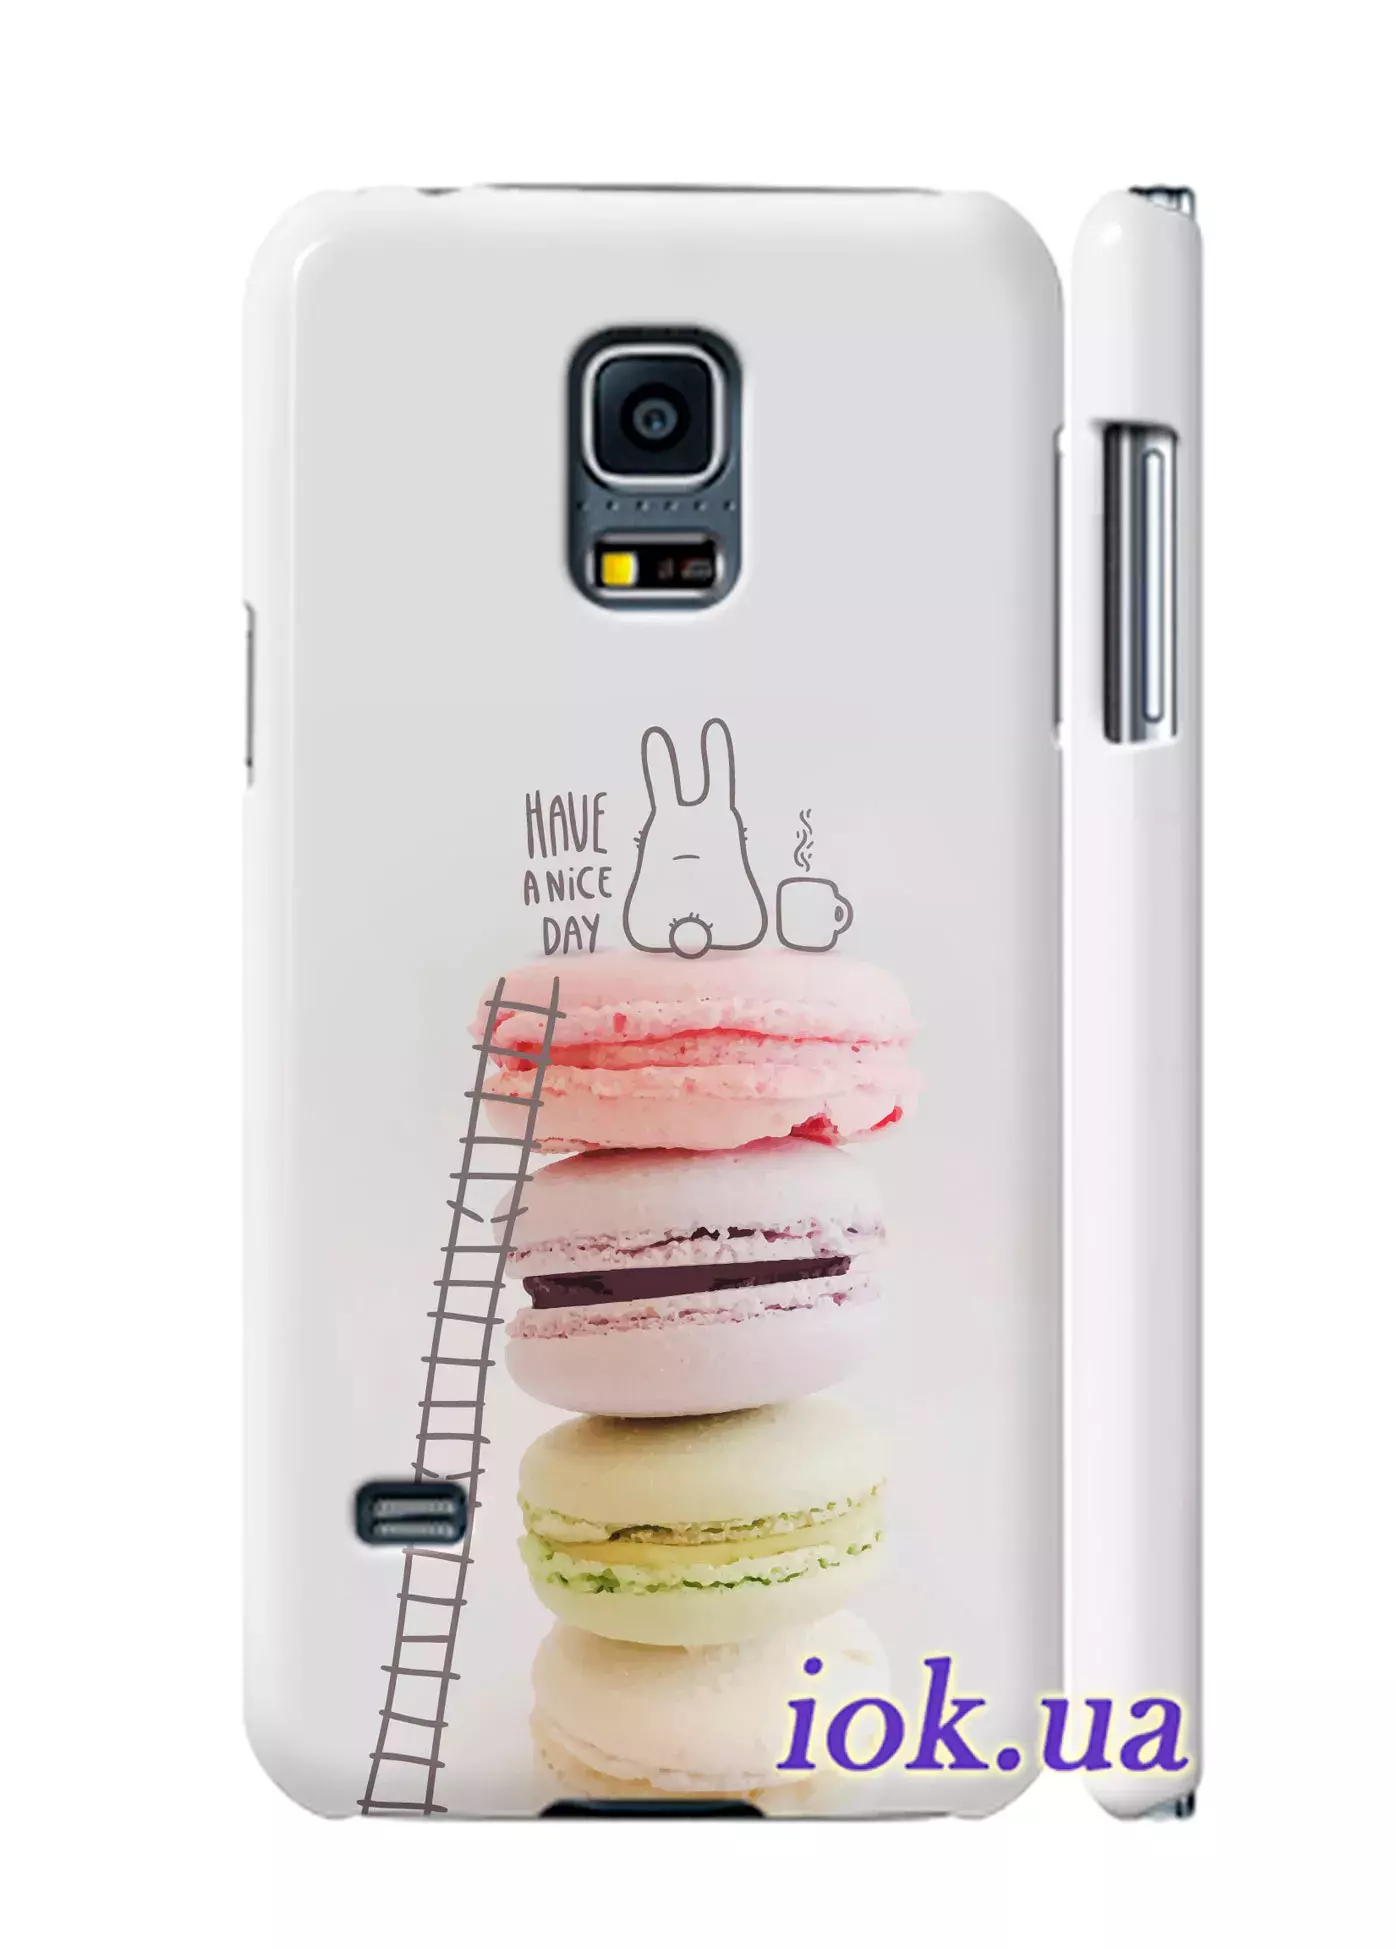 Чехол для Galaxy S5 Mini - Зайка на макарунах